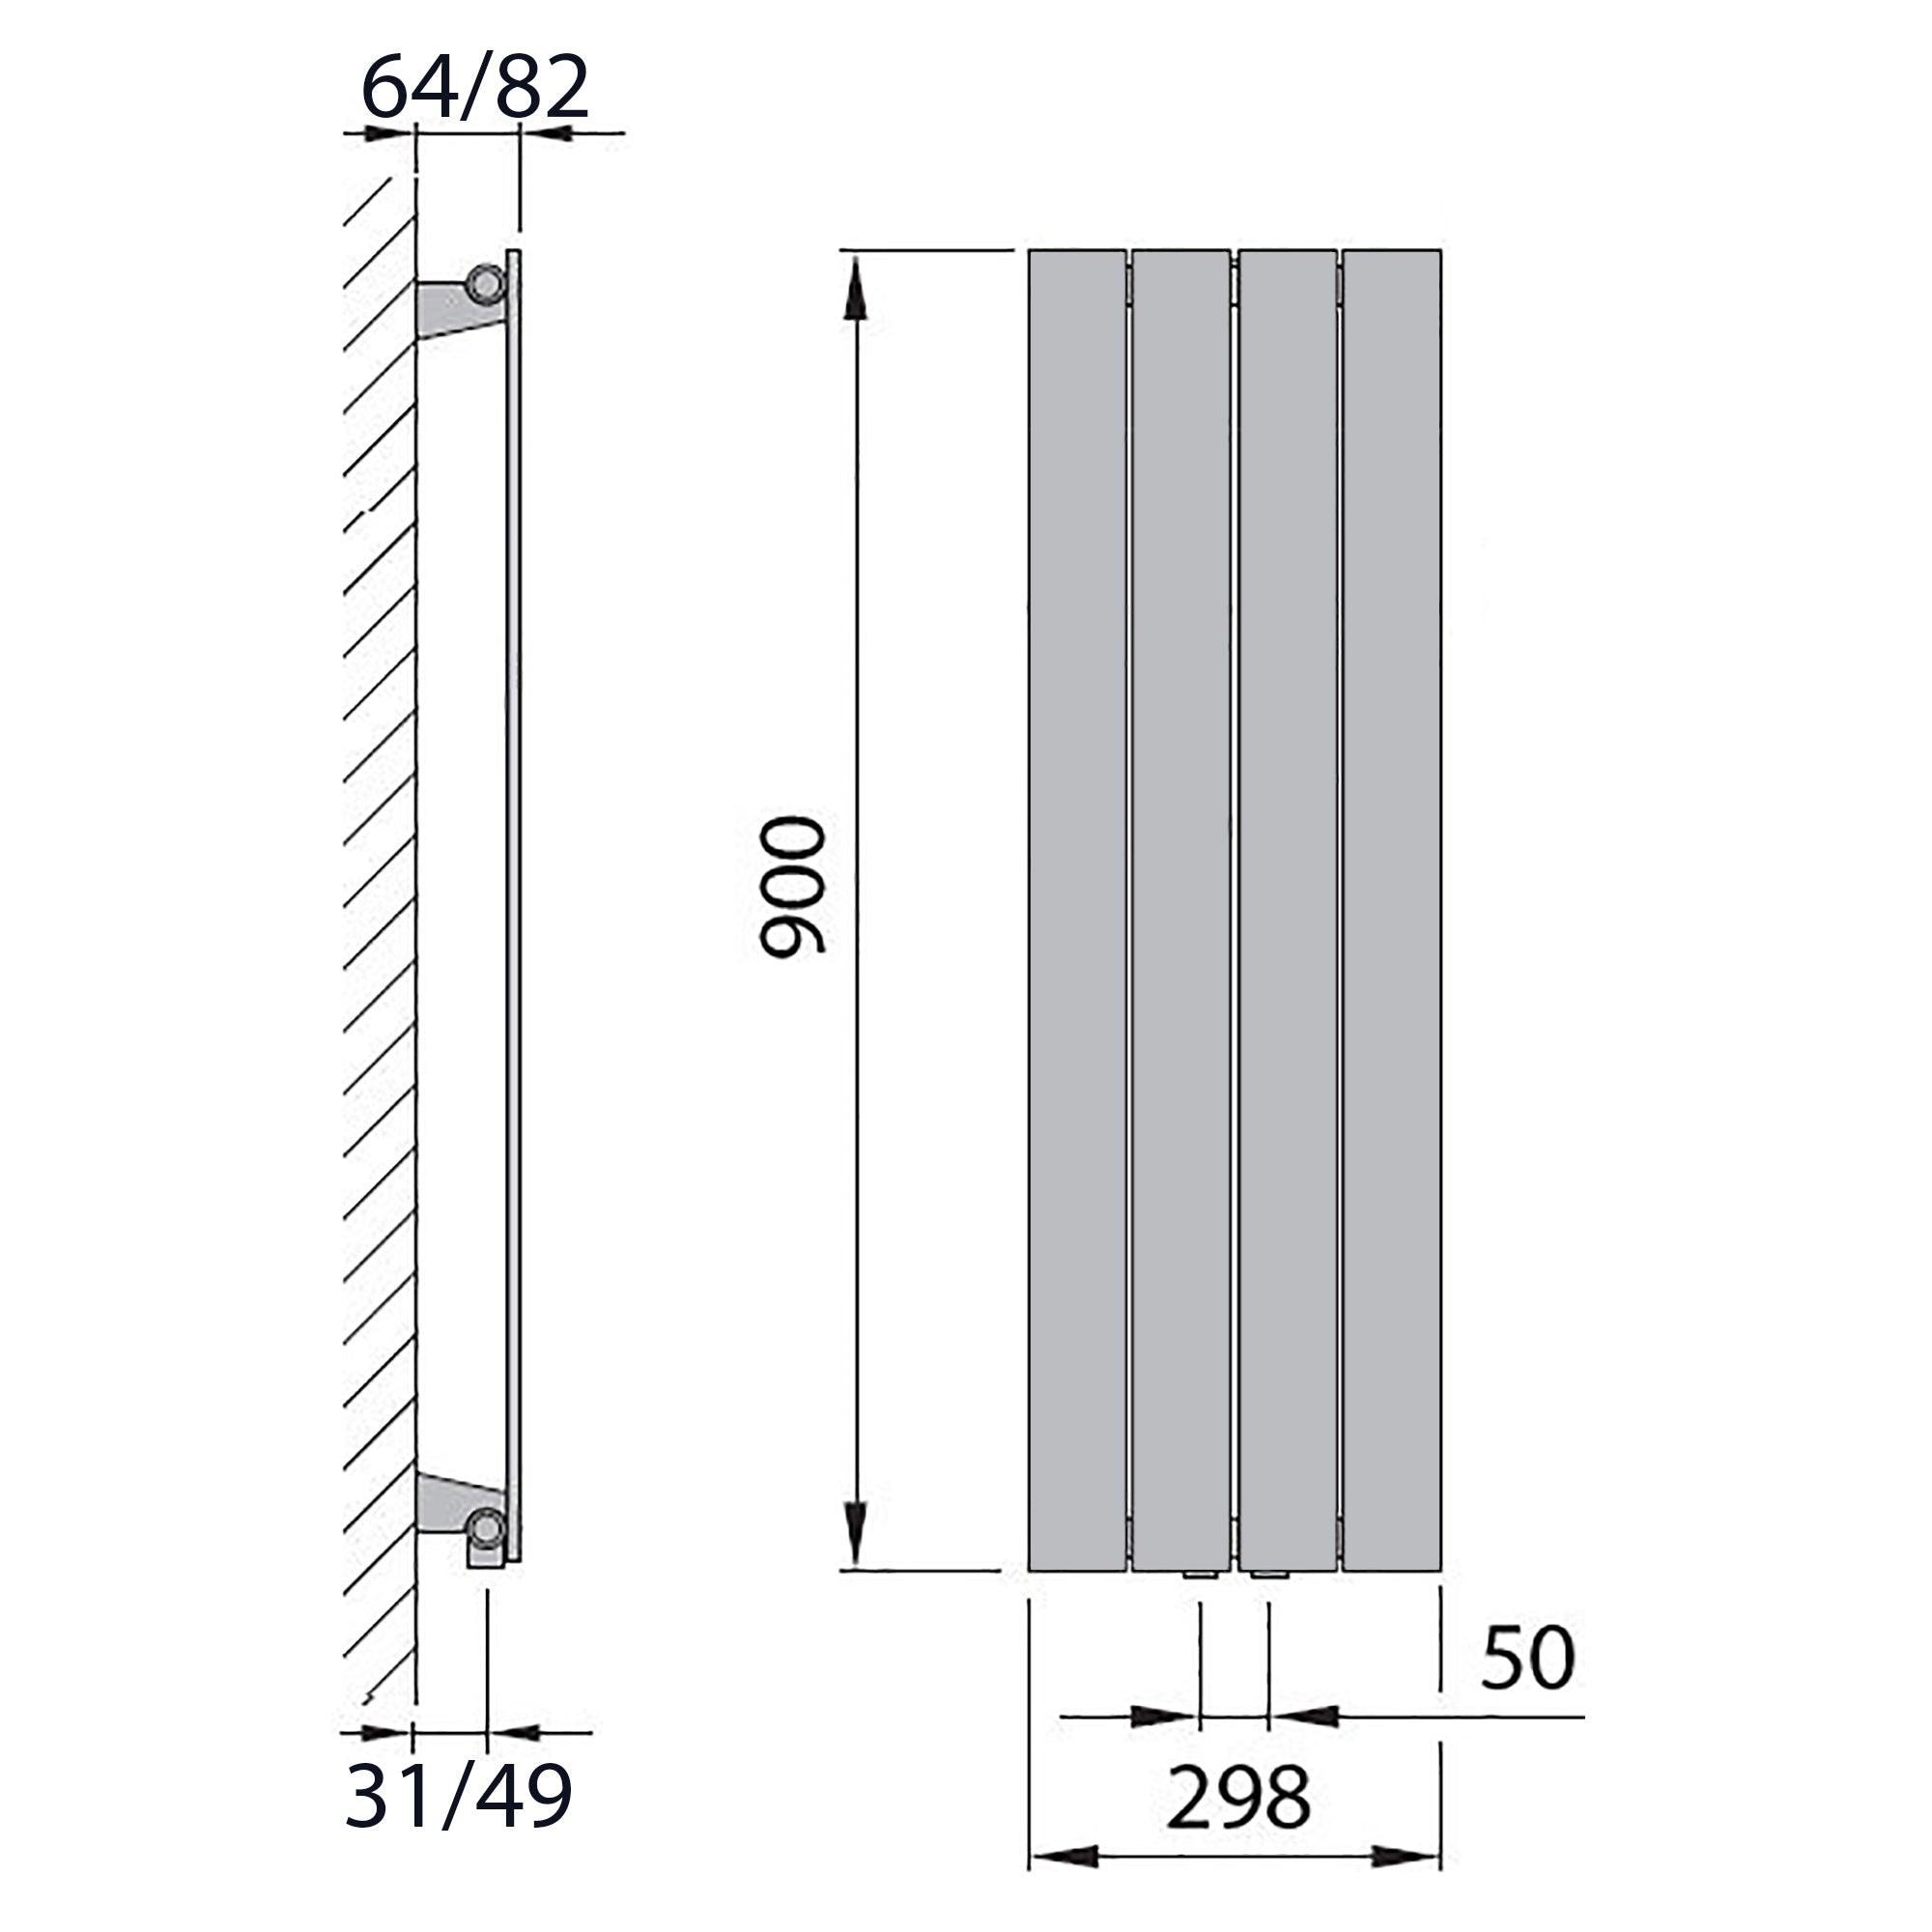 Design Paneelheizkörper vertikal 900 x 298 weiß Heizkörper Badheizkörper flach Badezimmer Heizung technische Zeichnung - heizkoerper.shop